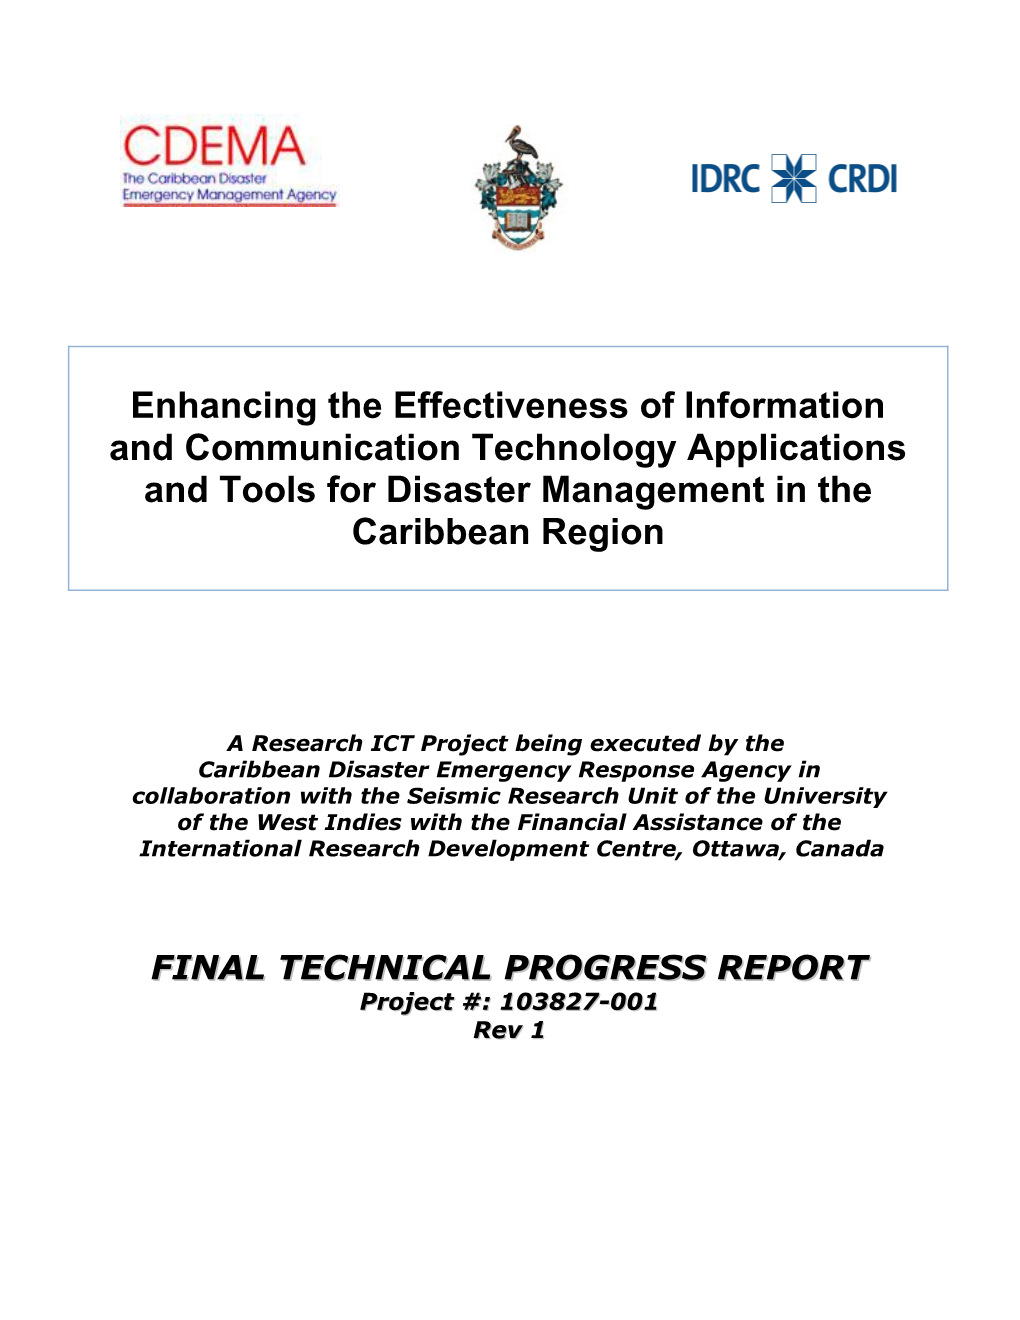 1St IDRC Progress Report